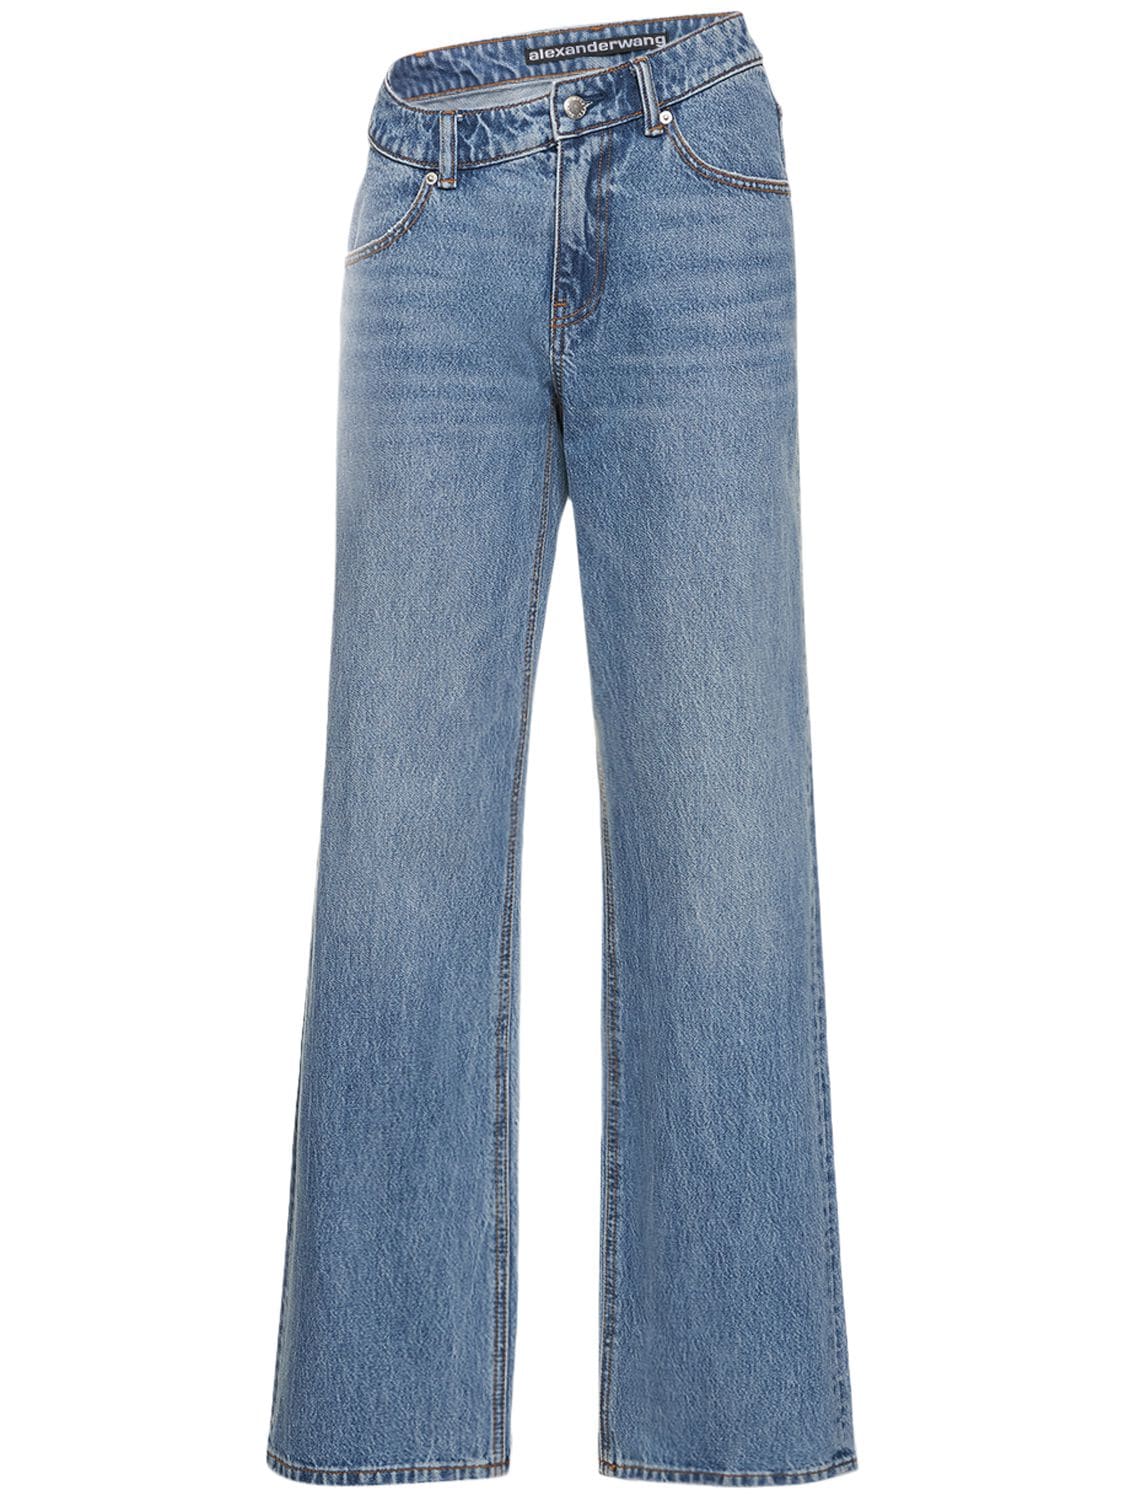 Asymmetrical Waistband Slouchy Jeans - ALEXANDER WANG - Modalova